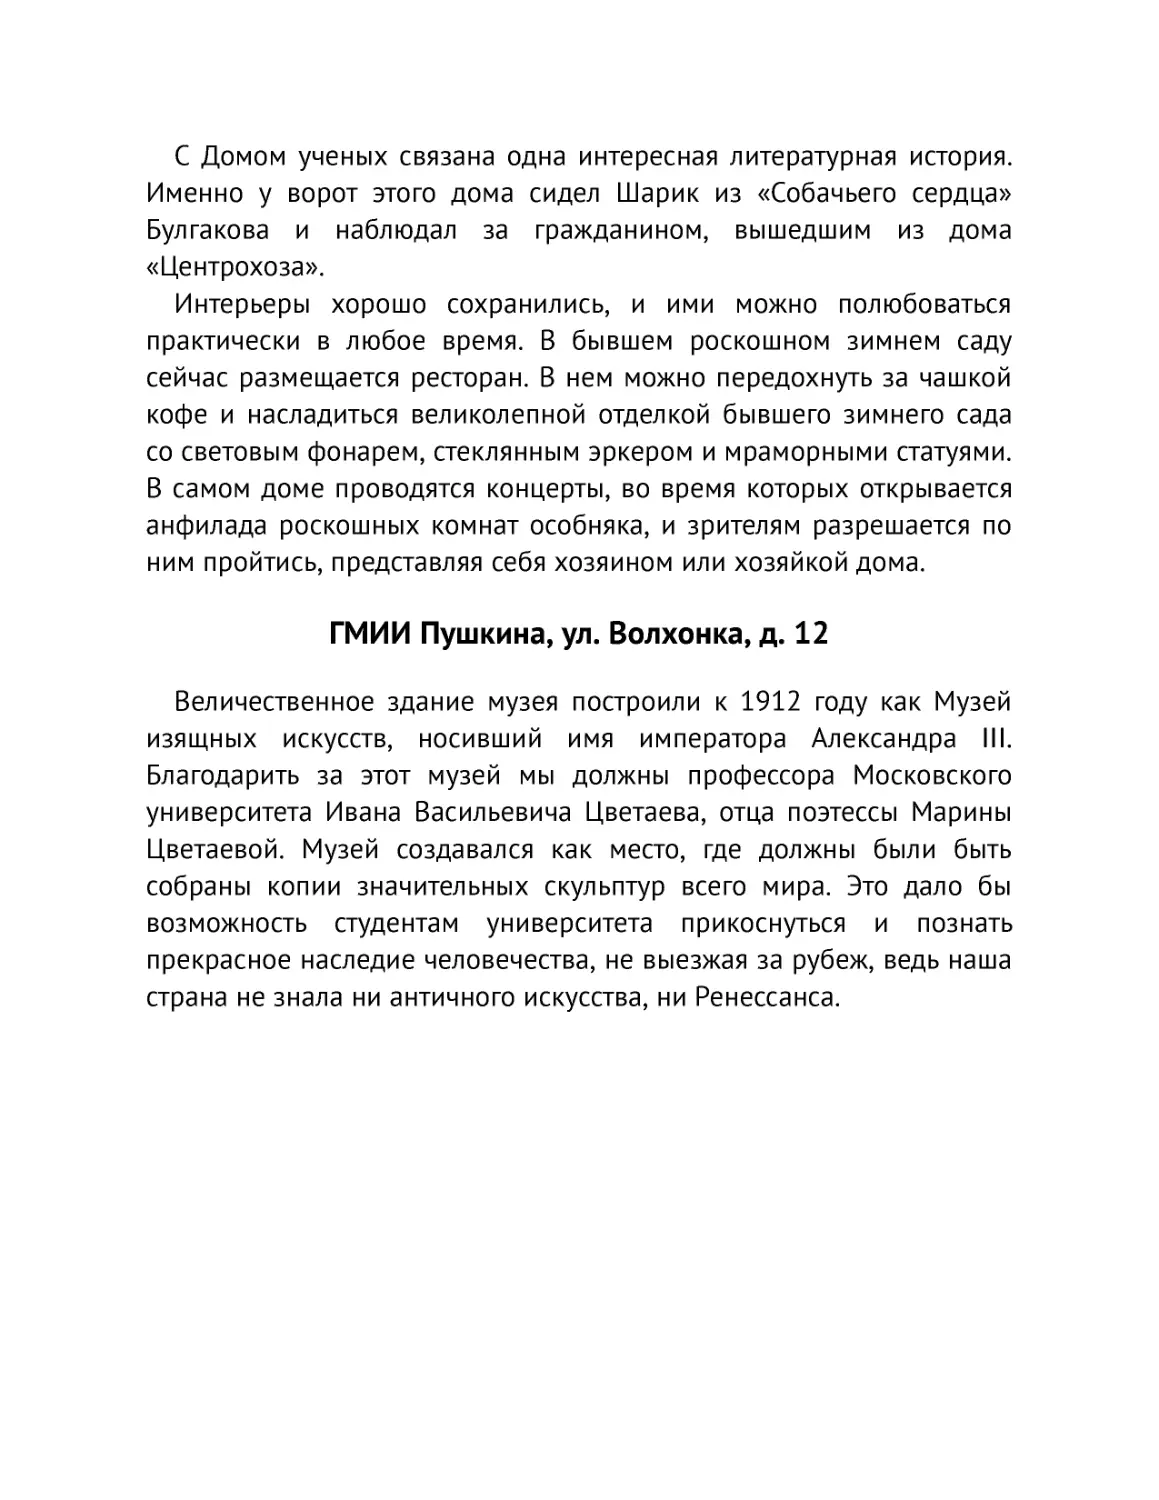 ﻿ГМИИ Пушкина, ул. Волхонка, д. 1